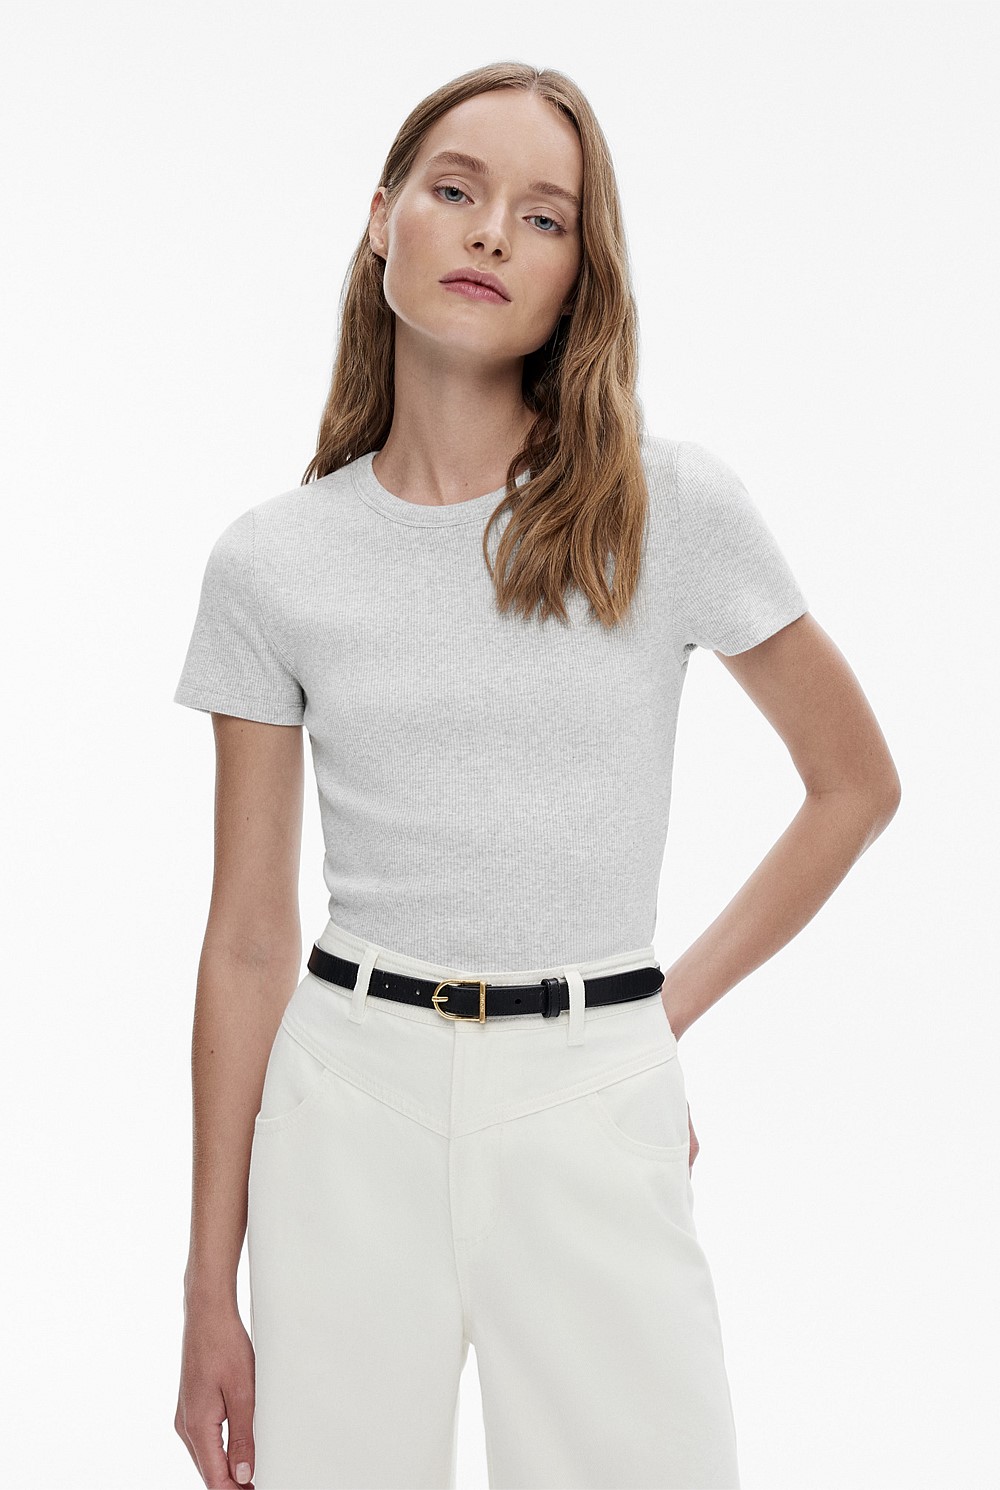 Aueoeo Cute T Shirts for Women, Women's Cotton Linen Shirt Short Sleeve  Button Up Pocket V-Neck T-Shirt Short Sleeve Lapel Top 